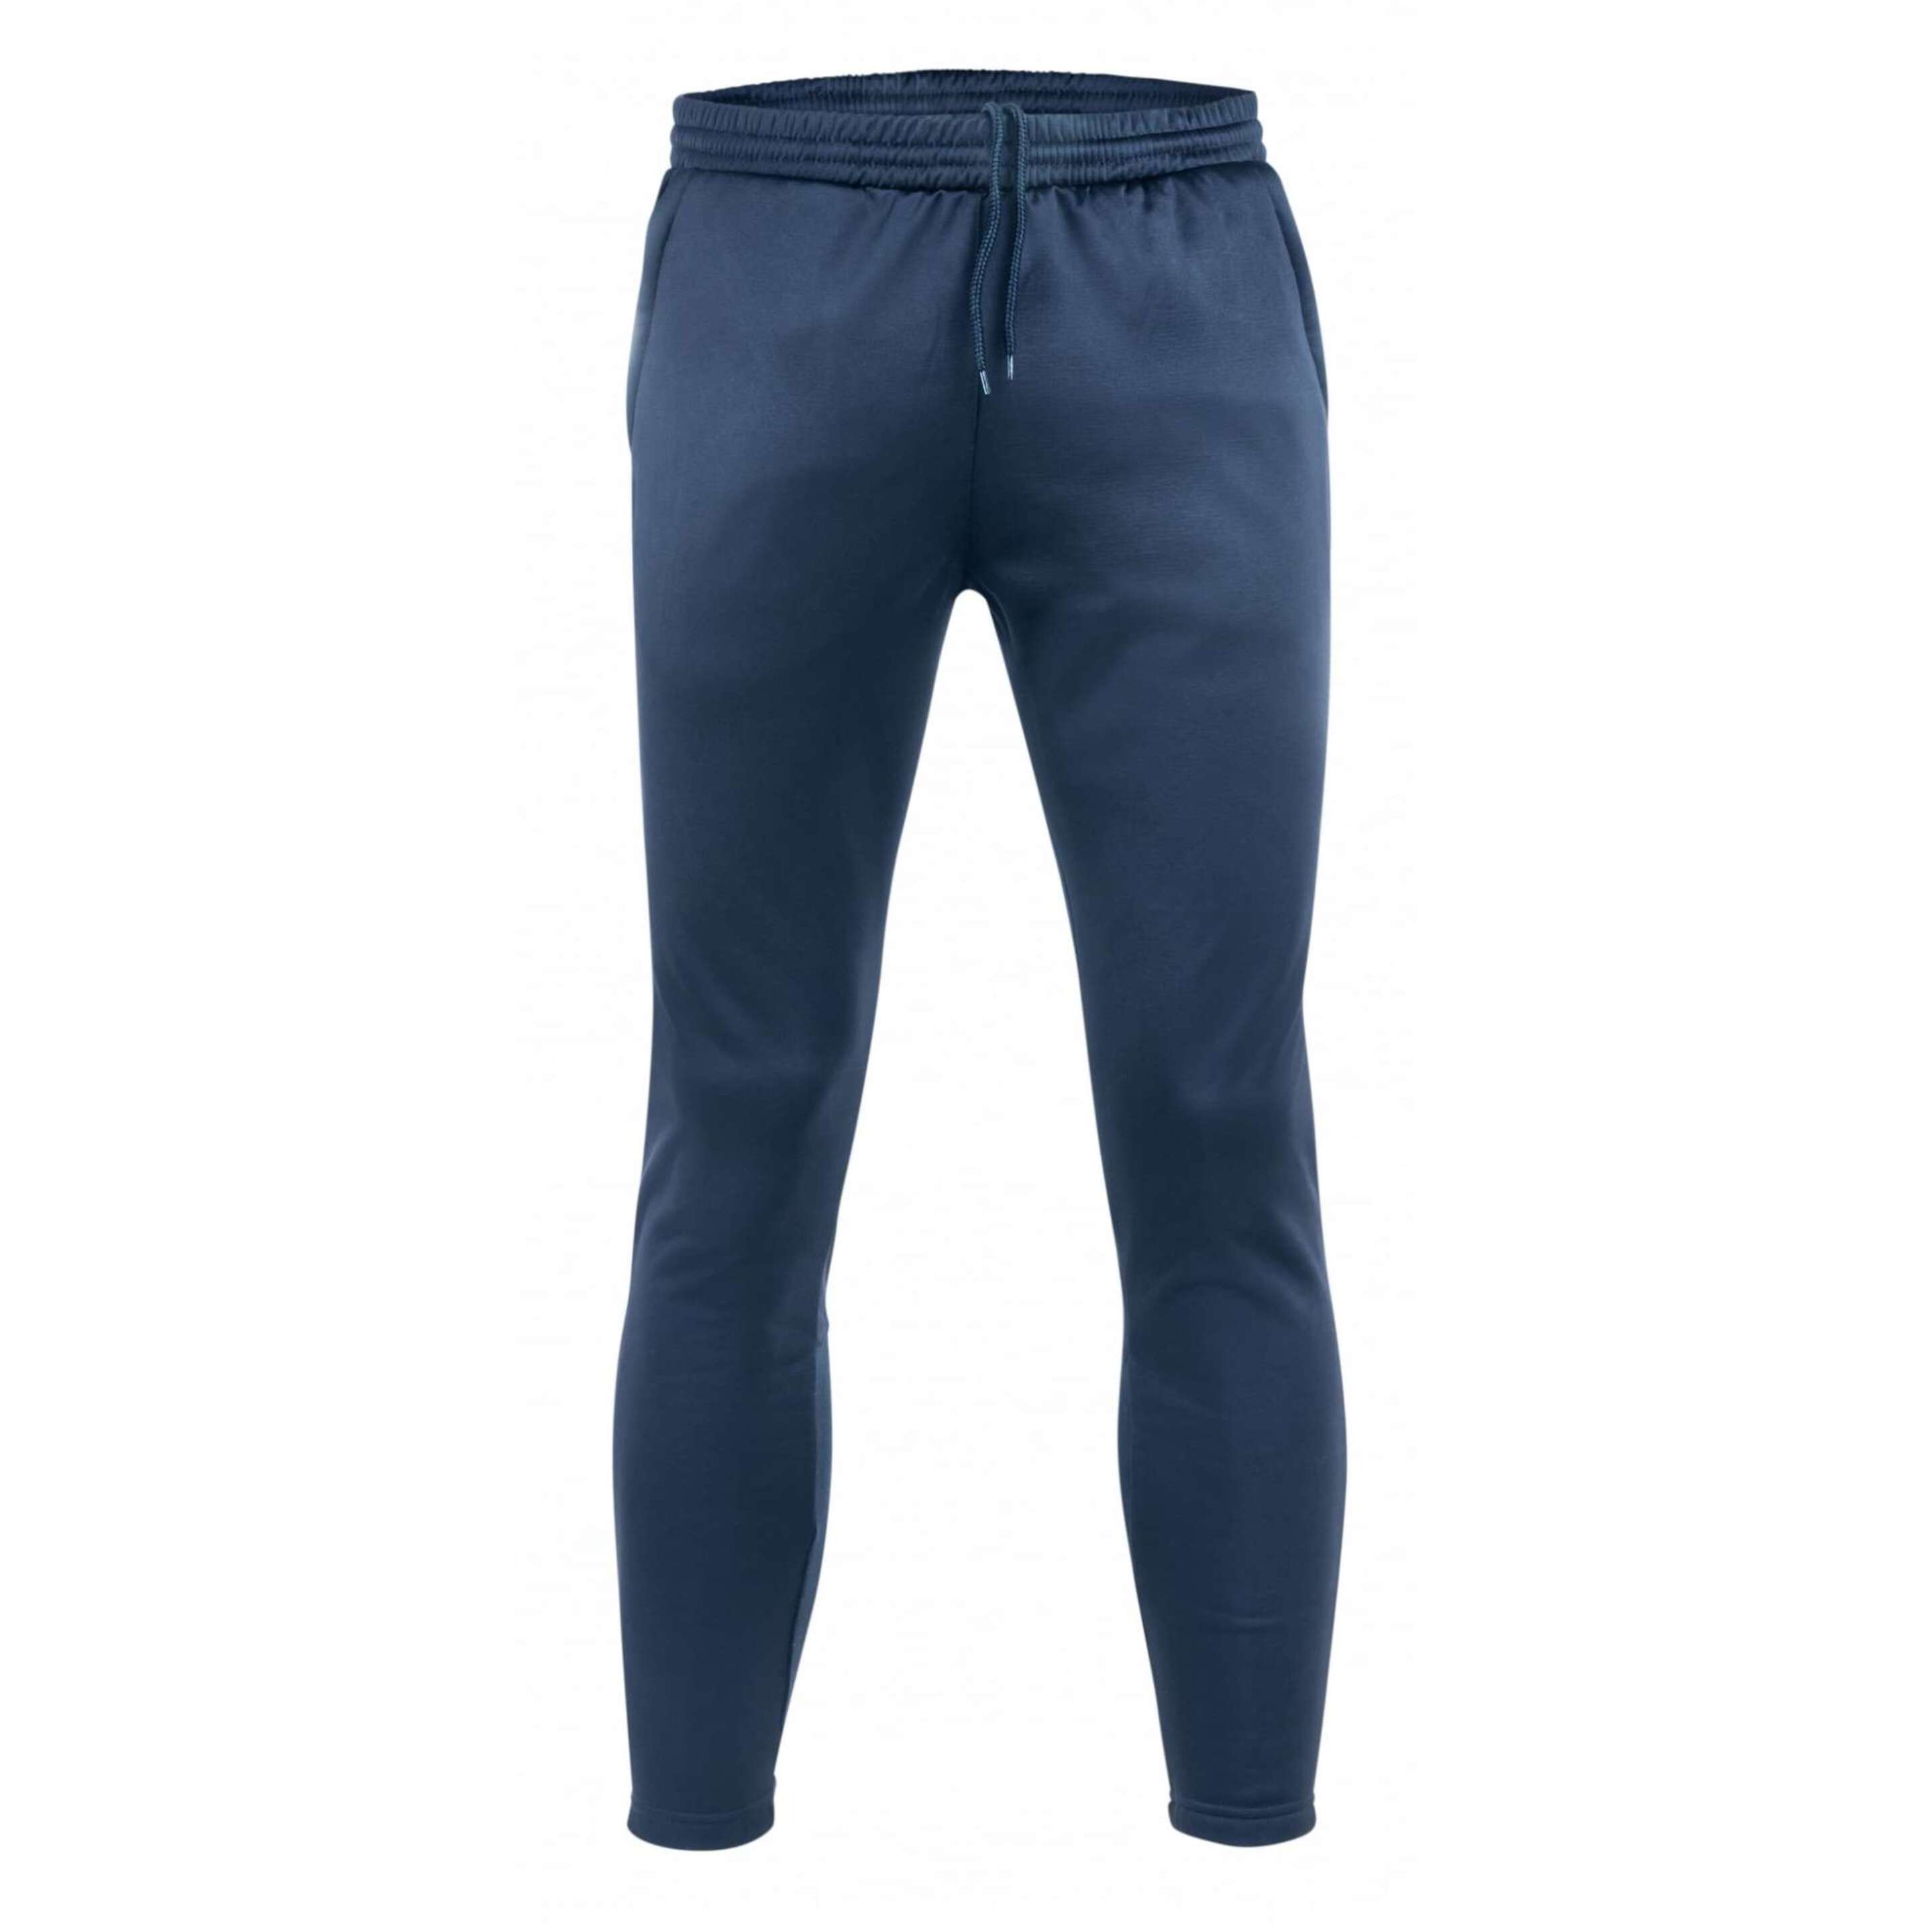 Pantalón Largo Acerbis Astro Evolution - Azul Oscuro - Pantalón  MKP